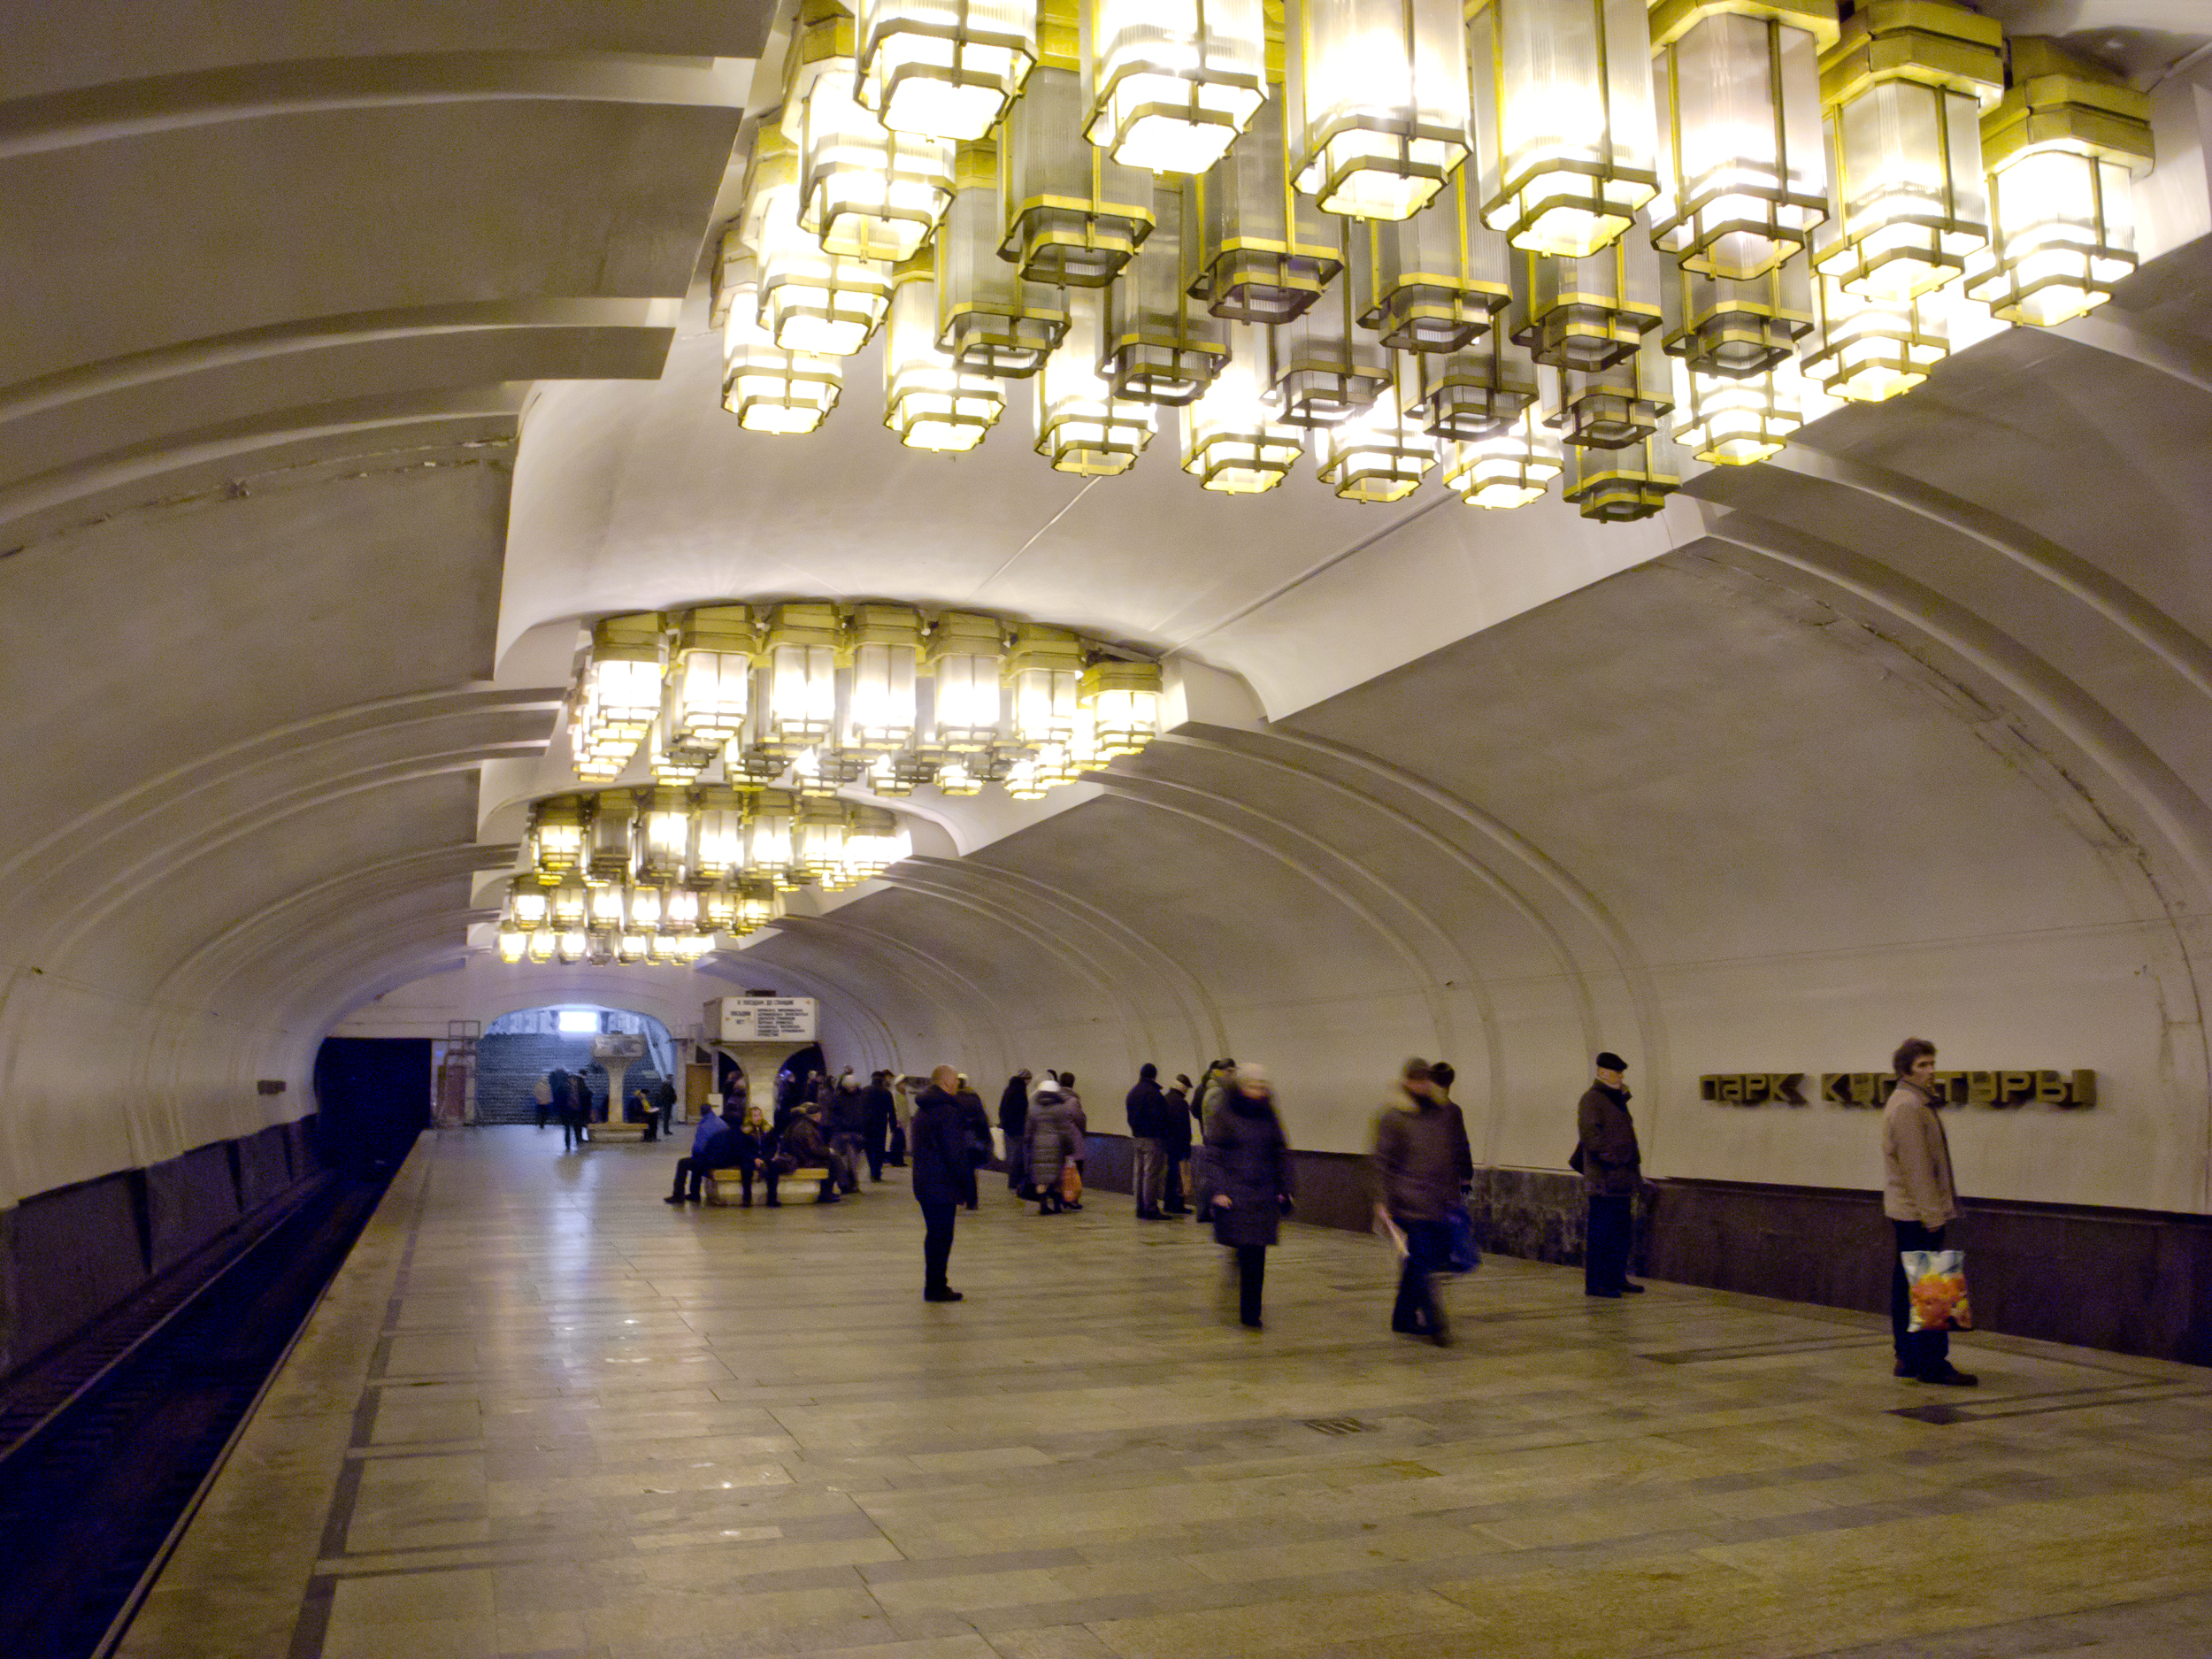 метро горьковская в нижнем новгороде